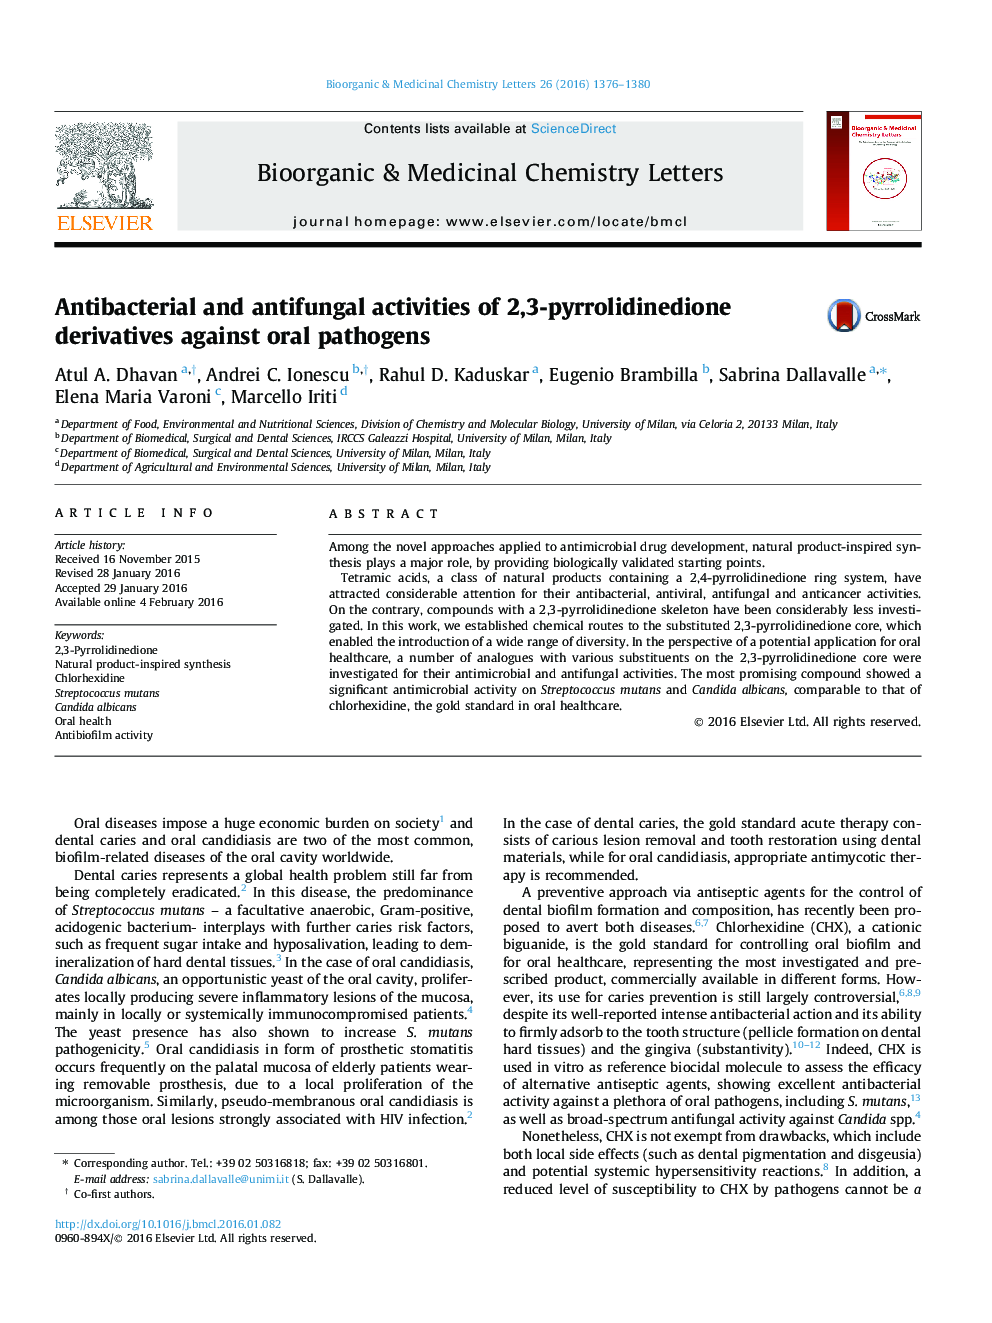 فعالیت های ضد باکتری و ضد قارچی مشتقات 2،3-پیرولیدیدینون در برابر پاتوژن های خوراکی 